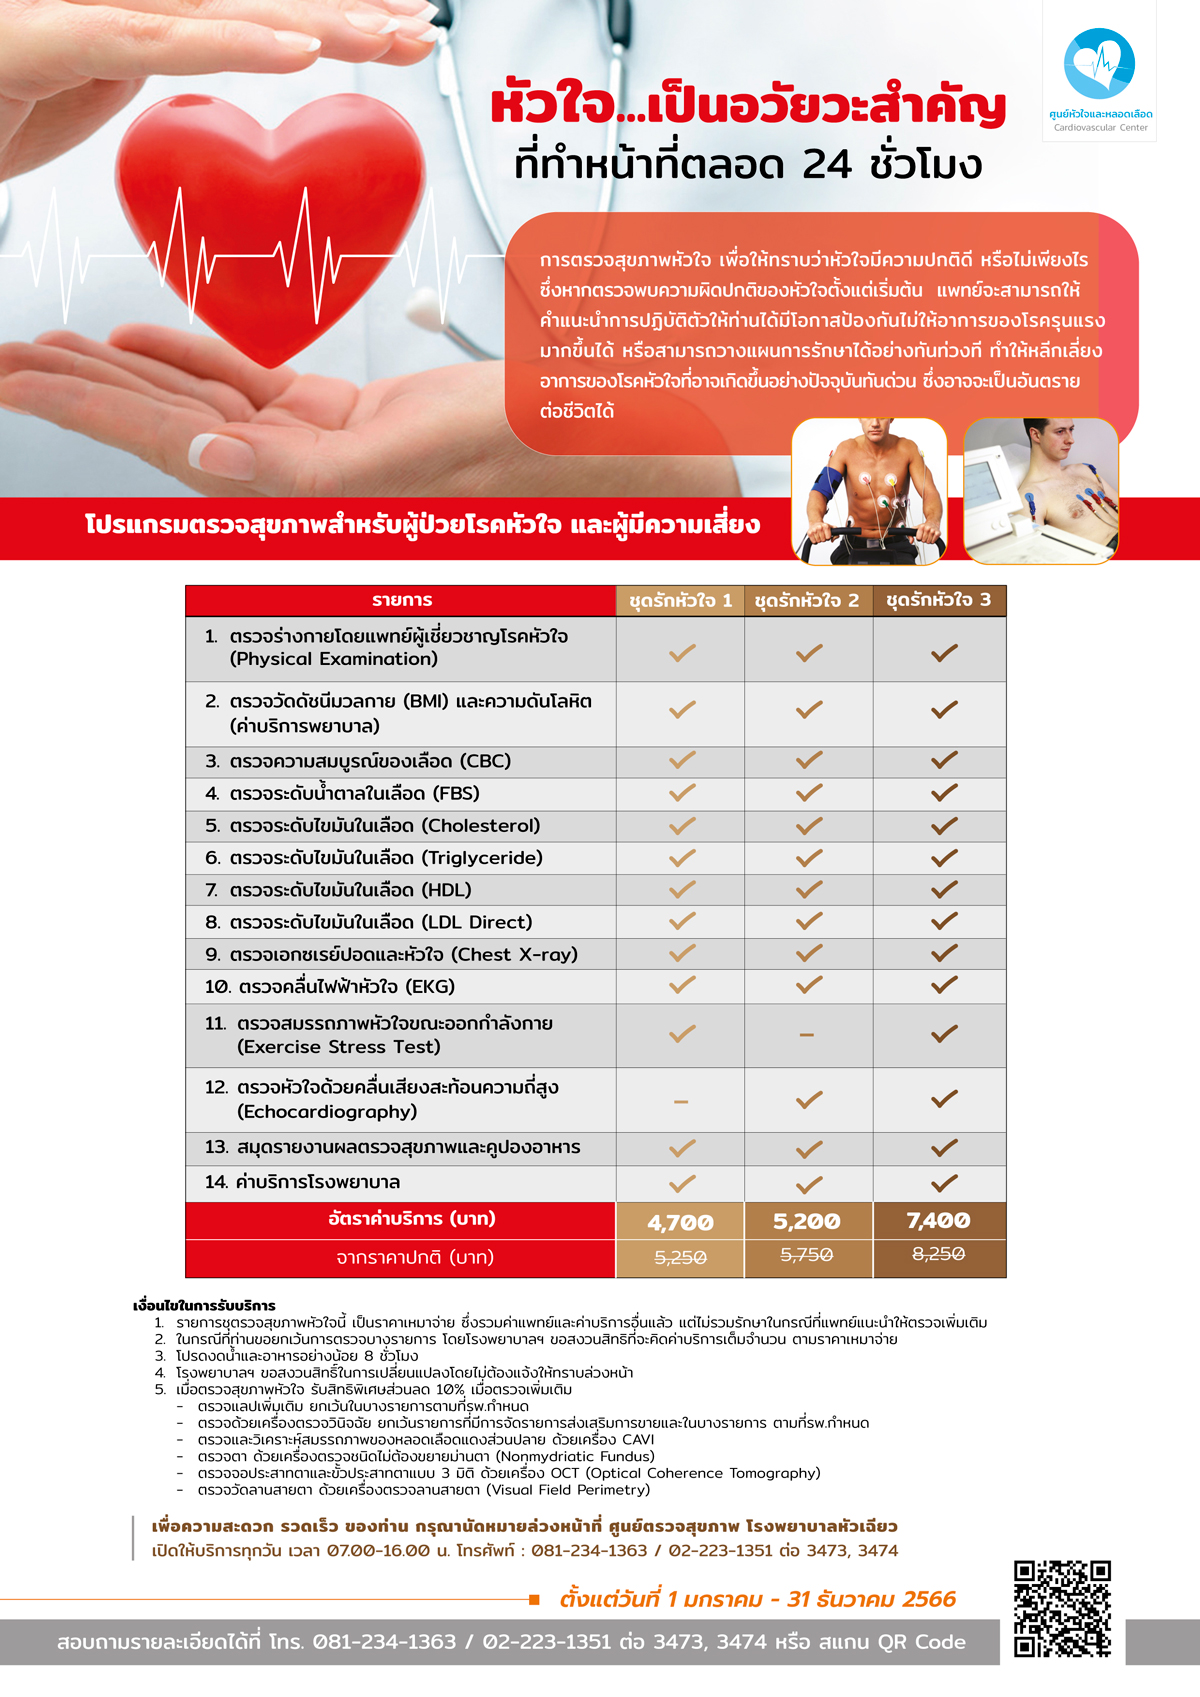 โปรแกรมตรวจสุขภาพสำหรับผู้ป่วยโรคหัวใจและผู้มีความเสี่ยง โรงพยาบาลหัวเฉียว